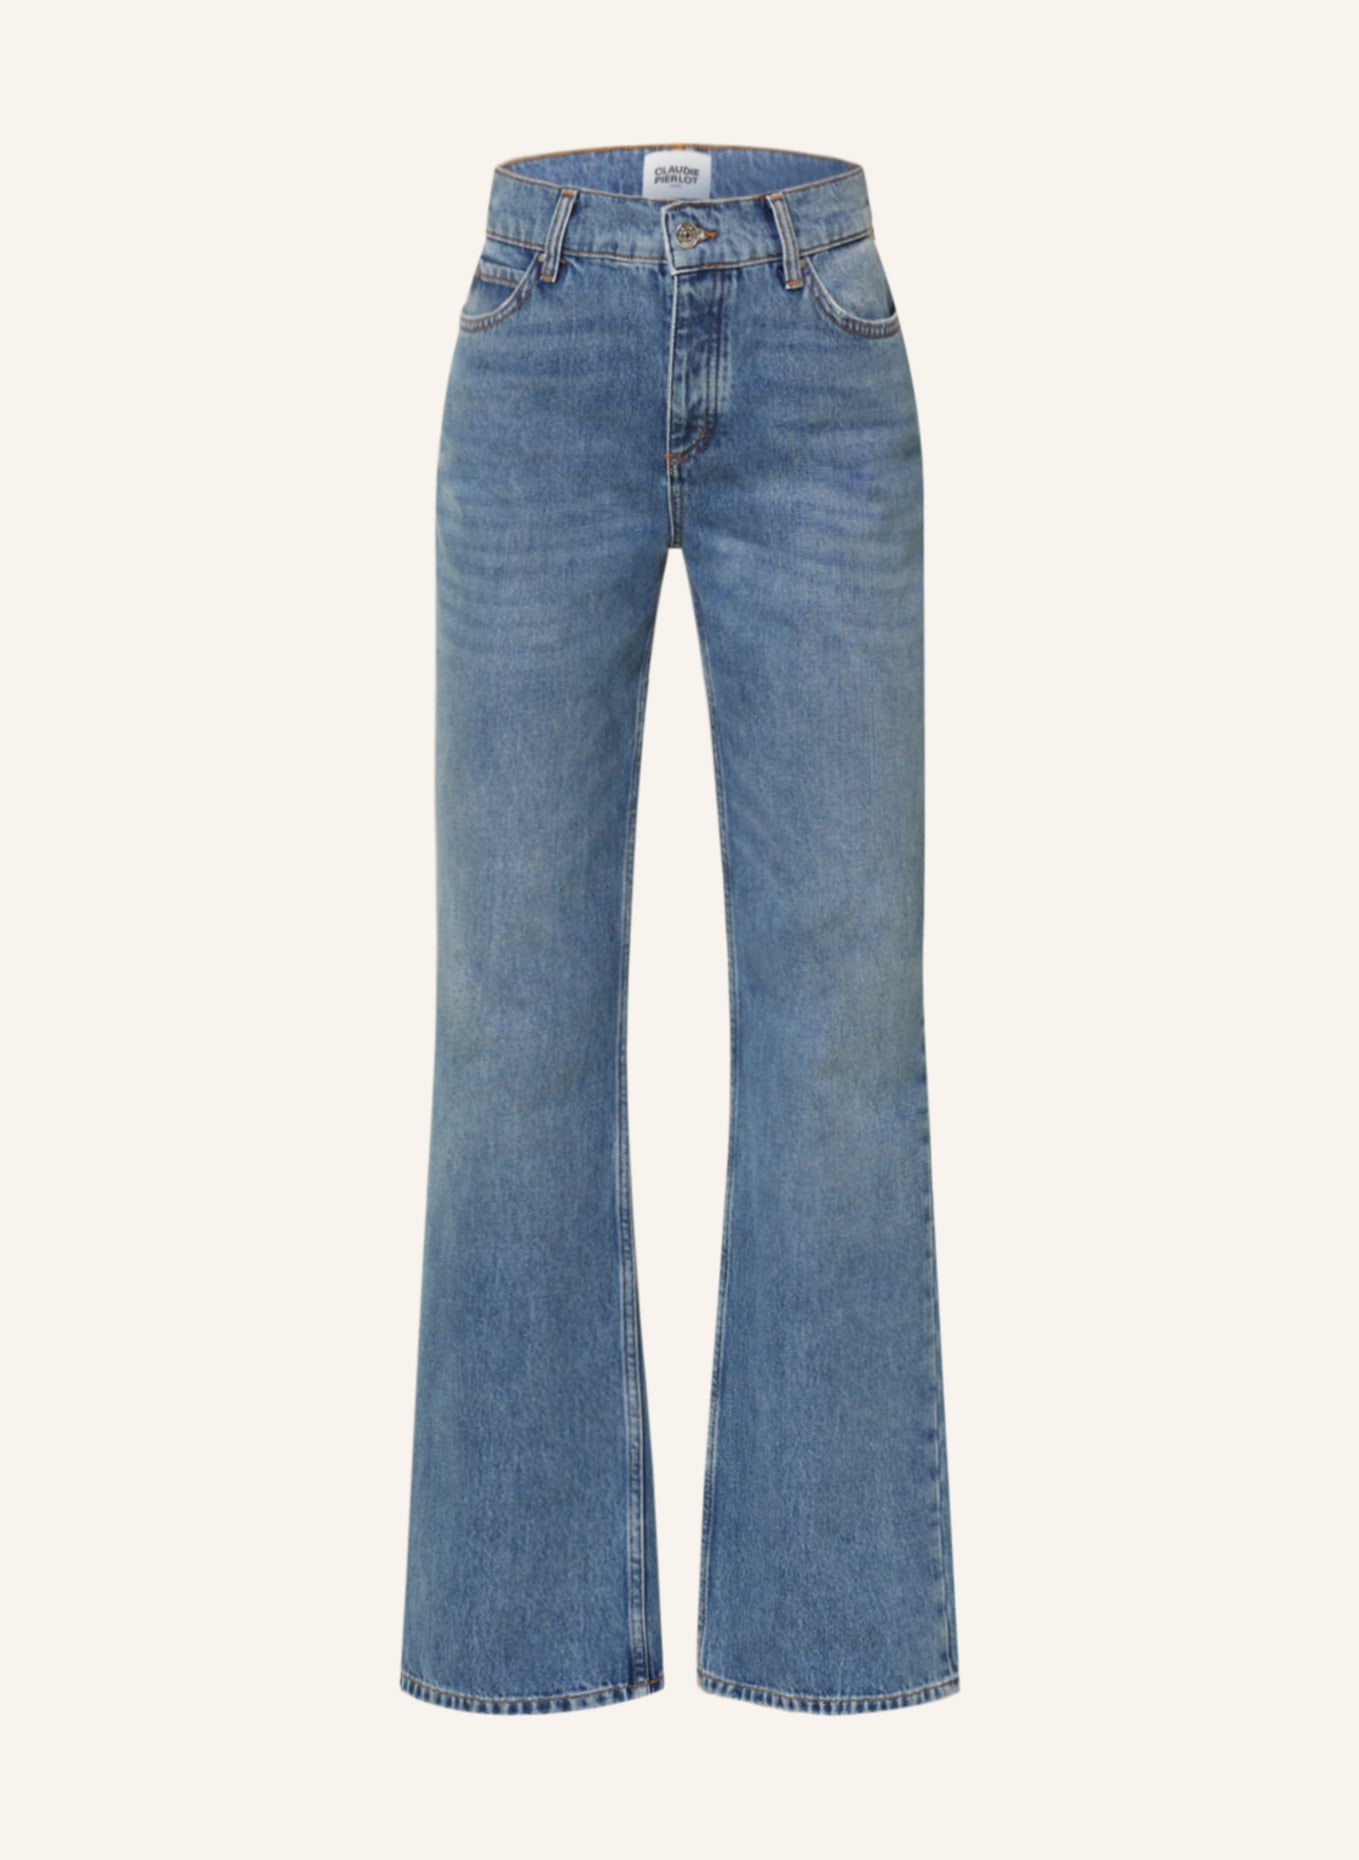 CLAUDIE PIERLOT Jeans PLANETEBLEU, Farbe: D031 DENIM MID BLUE (Bild 1)